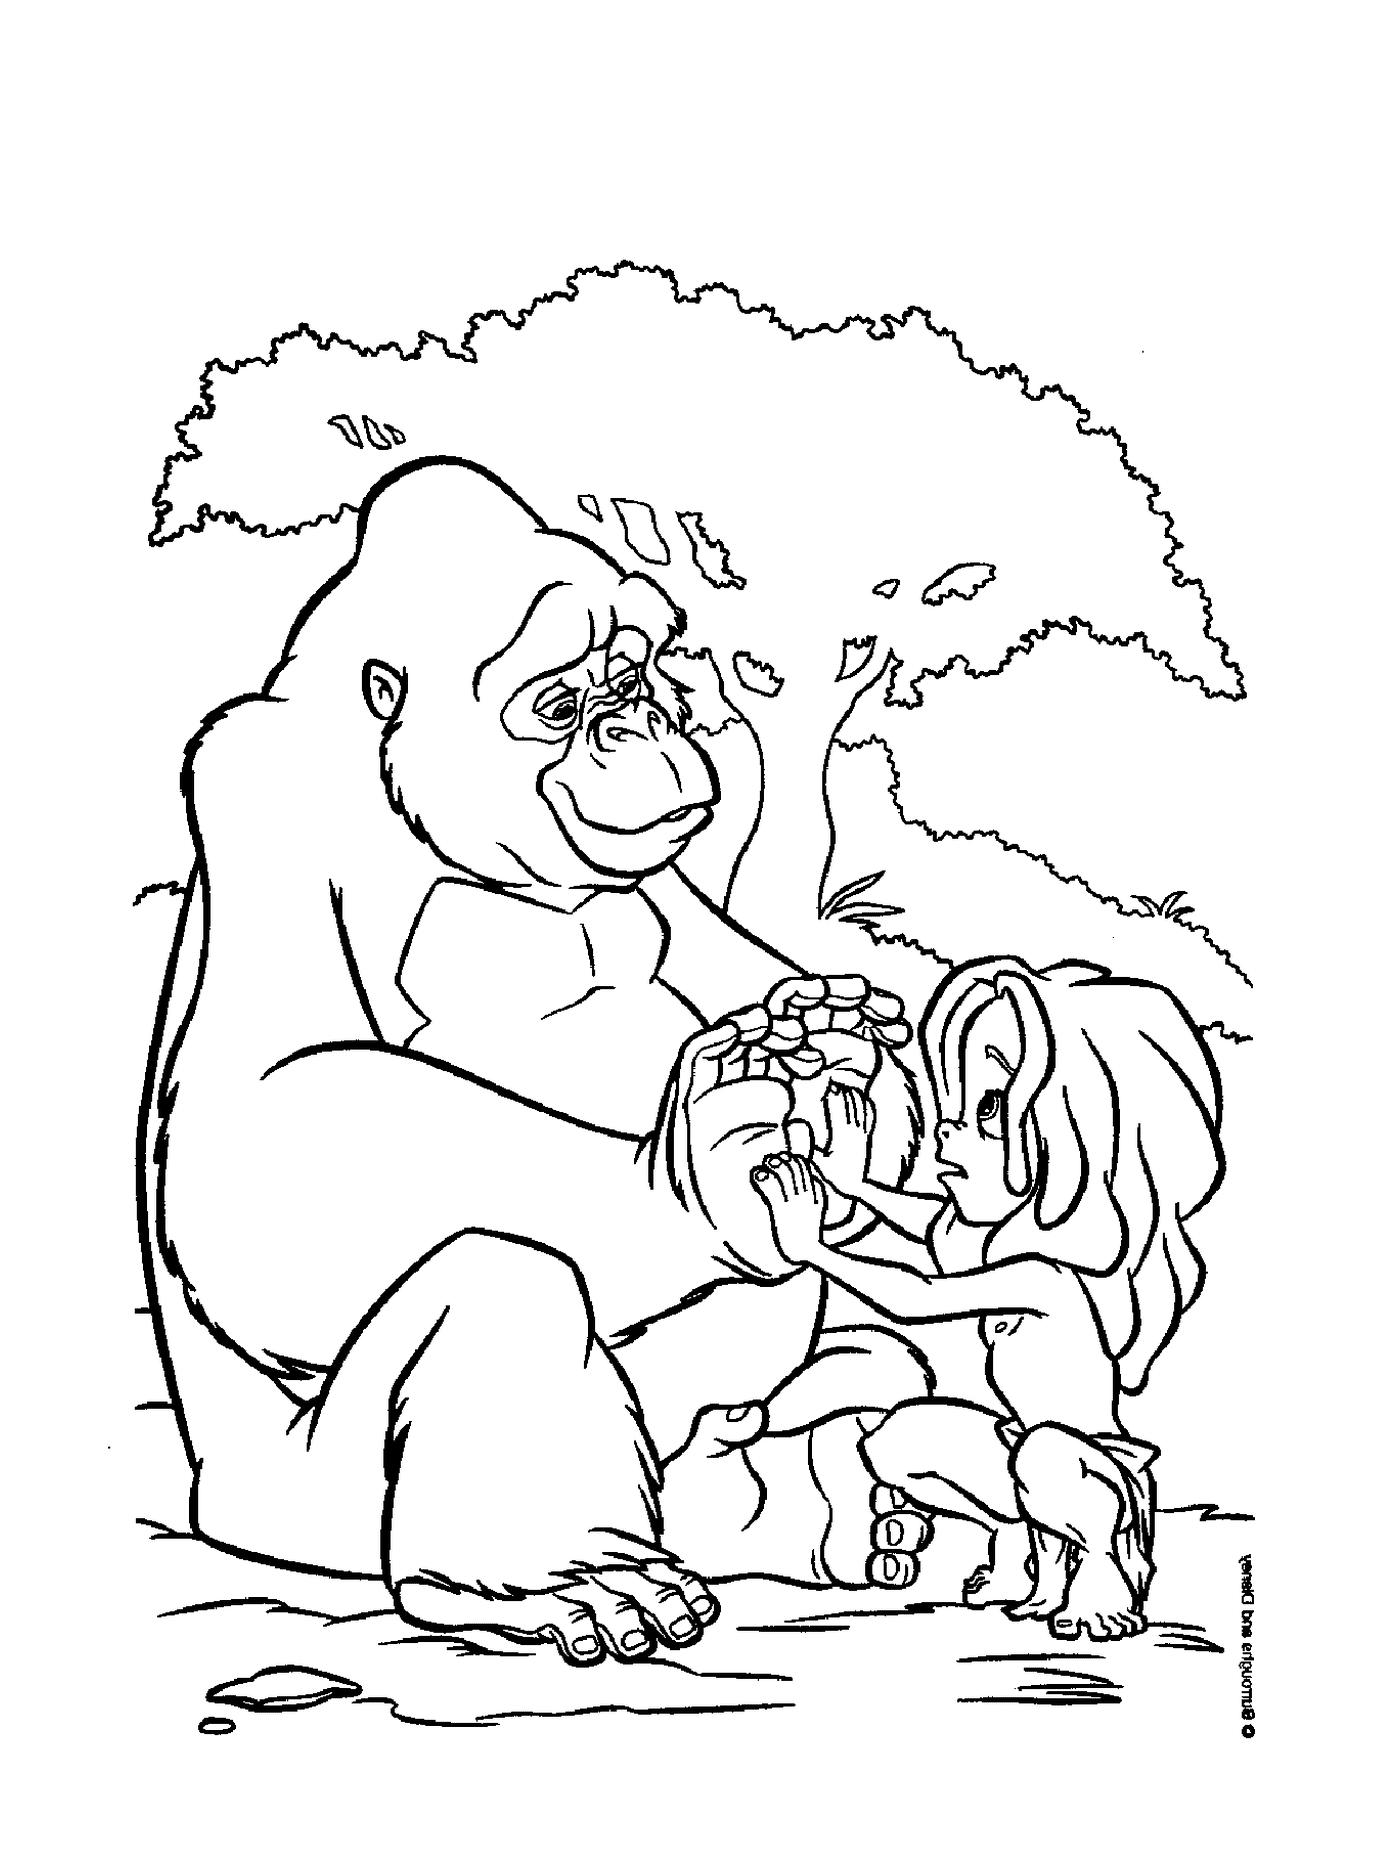  Adulto e bambino che giocano con un gorilla 